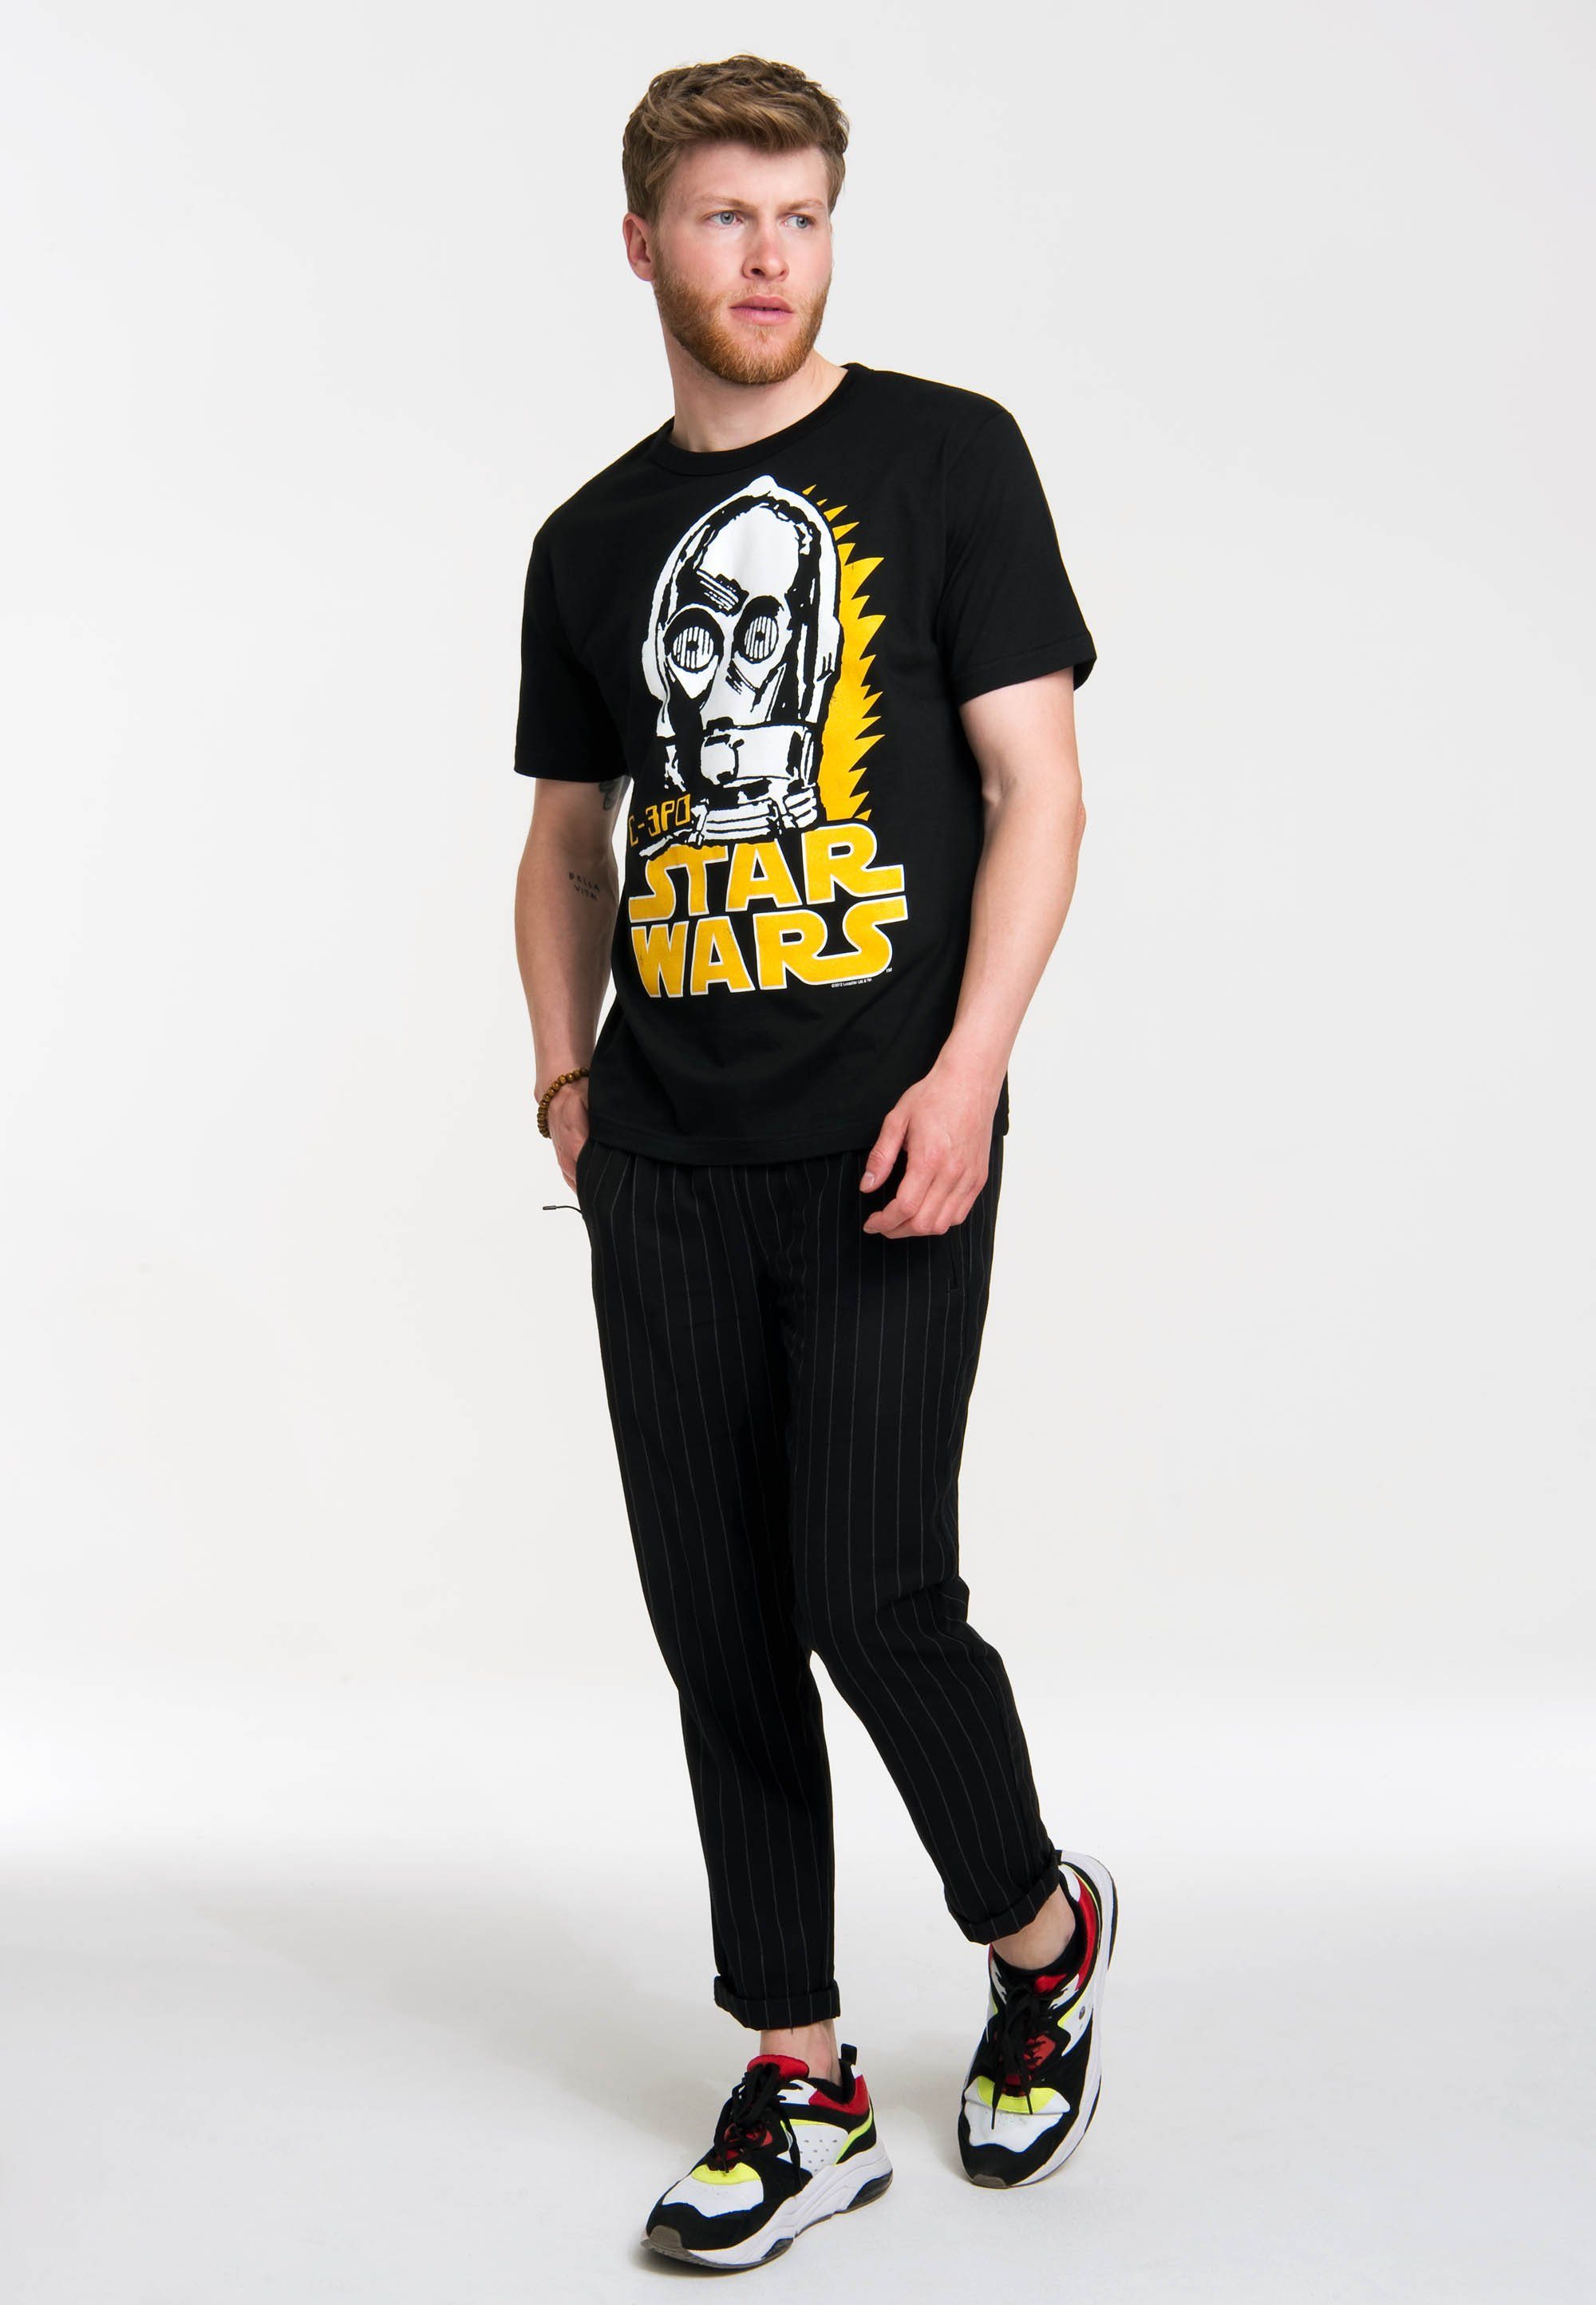 - coolem mit LOGOSHIRT Sterne C-3PO T-Shirt Krieg der Frontprint